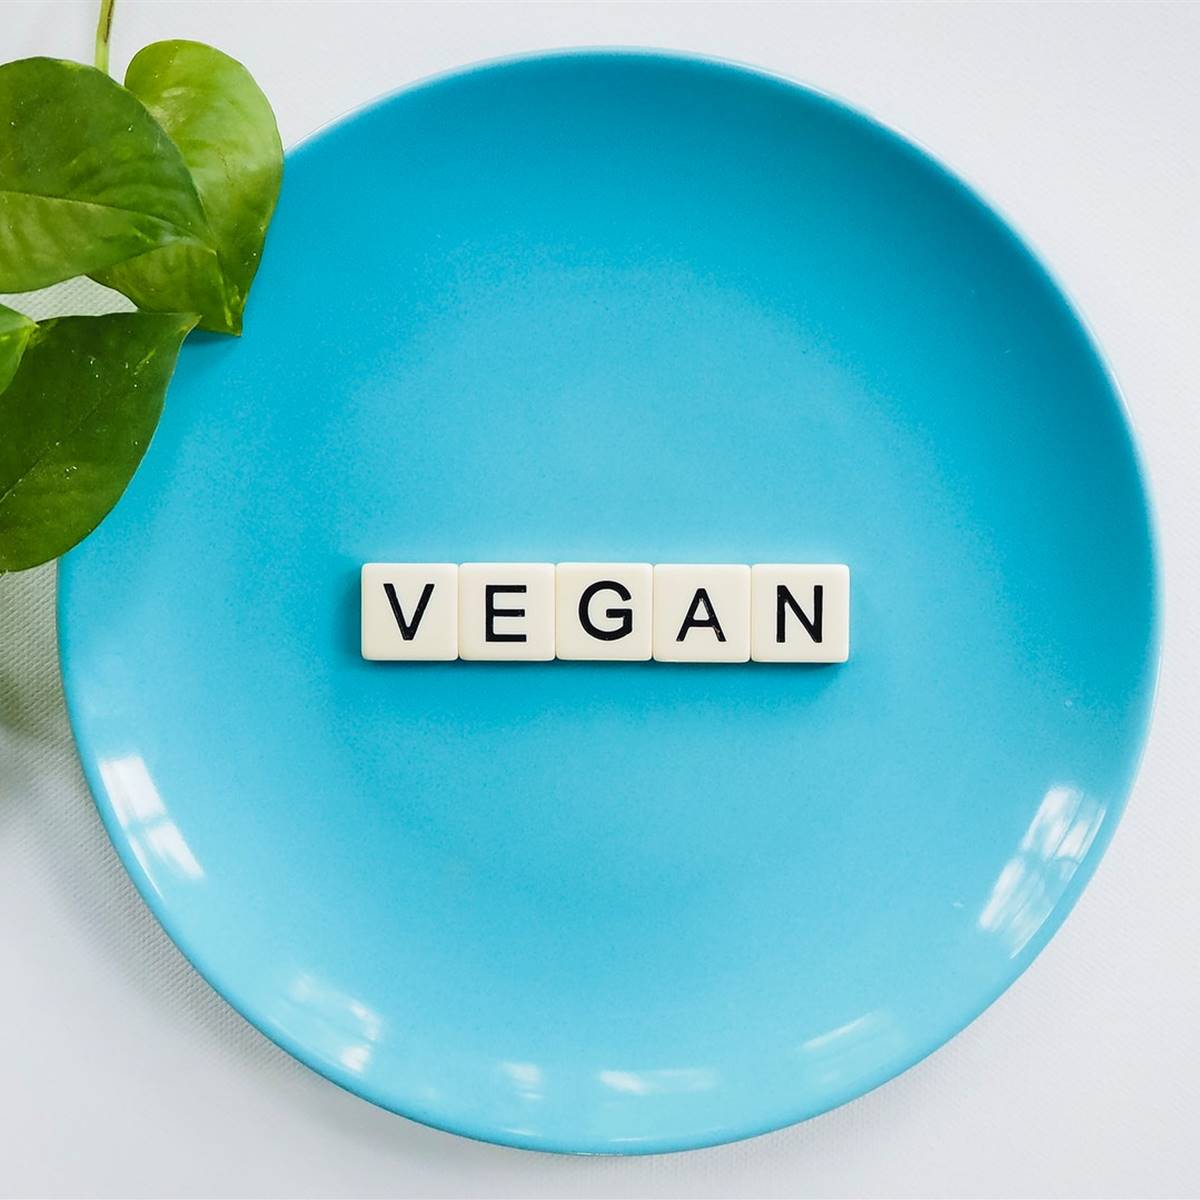 Plato azul con la palabra vegan escrita en piezas de scrabble